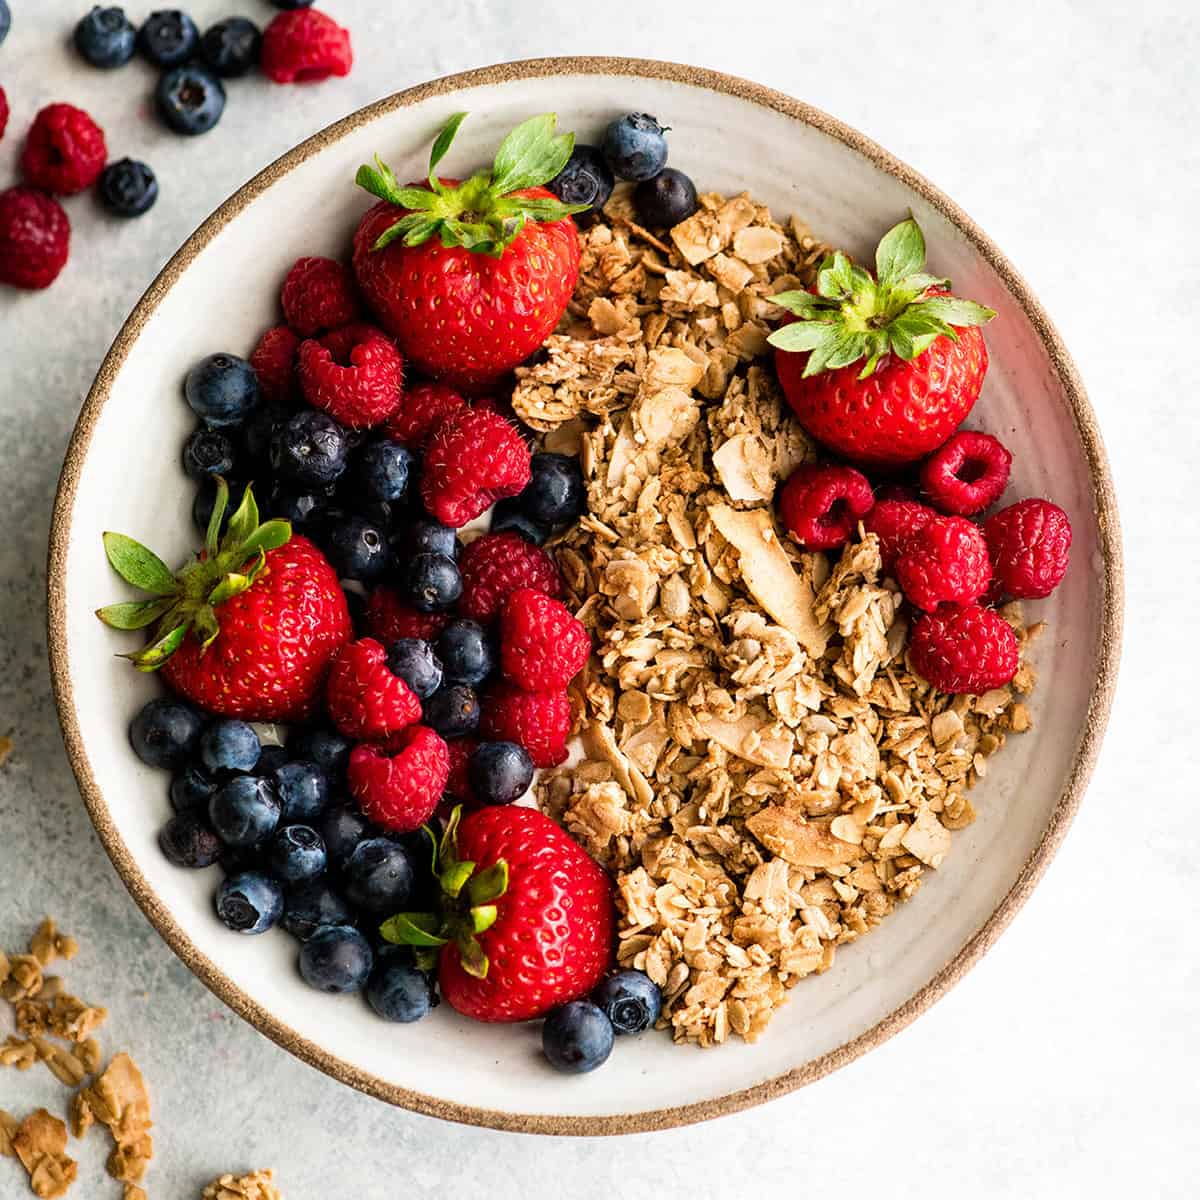 Healthy Breakfast Recipes homemade granola